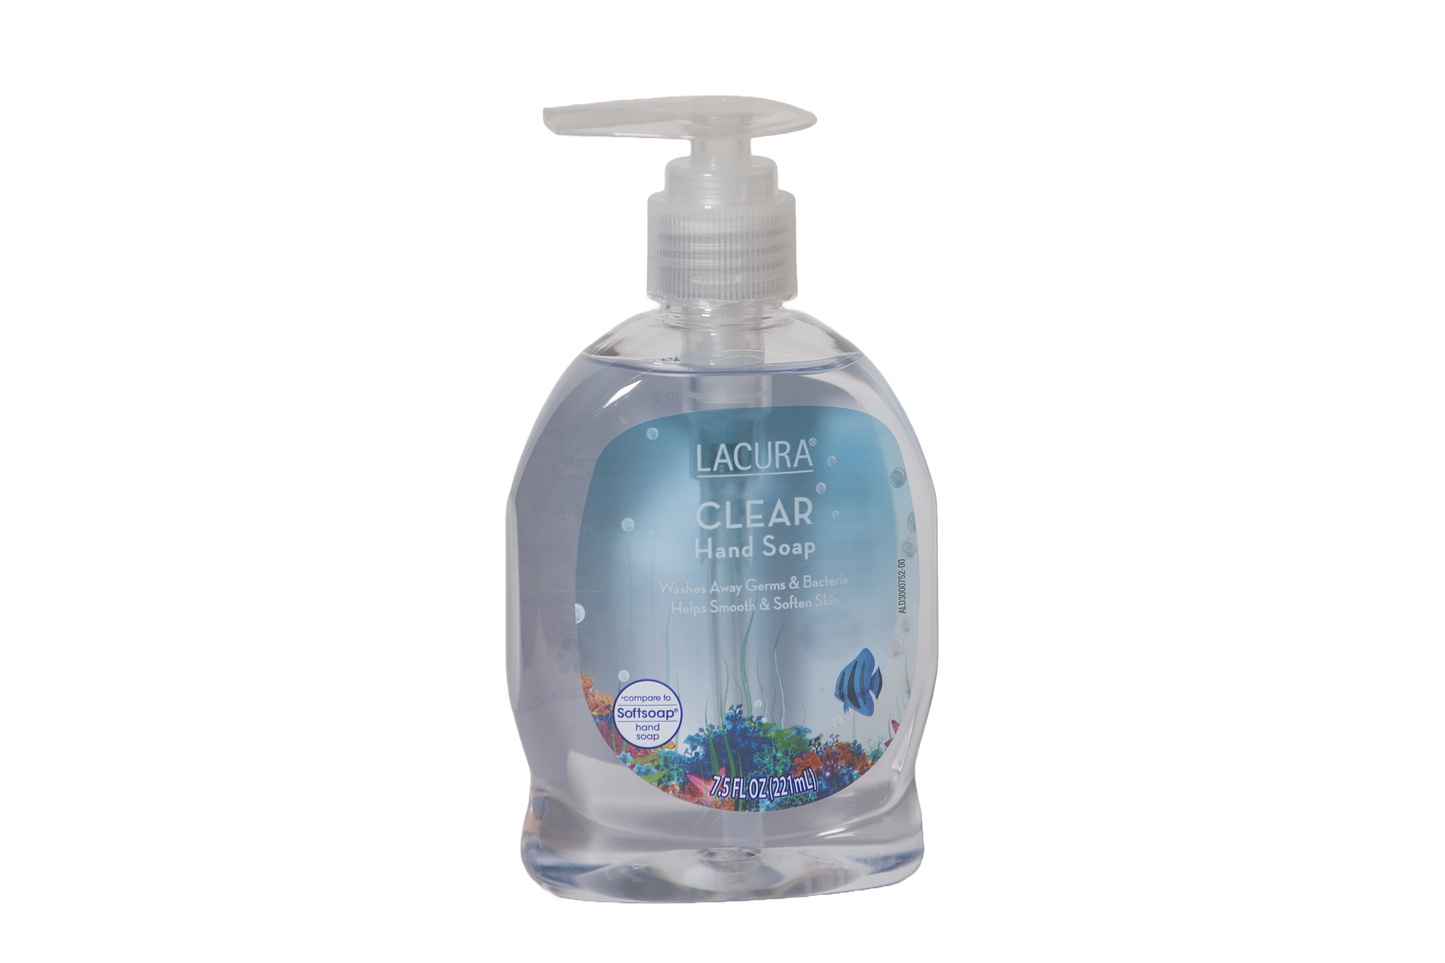 Lacura Clear Hand Soap, 7.5 fl oz